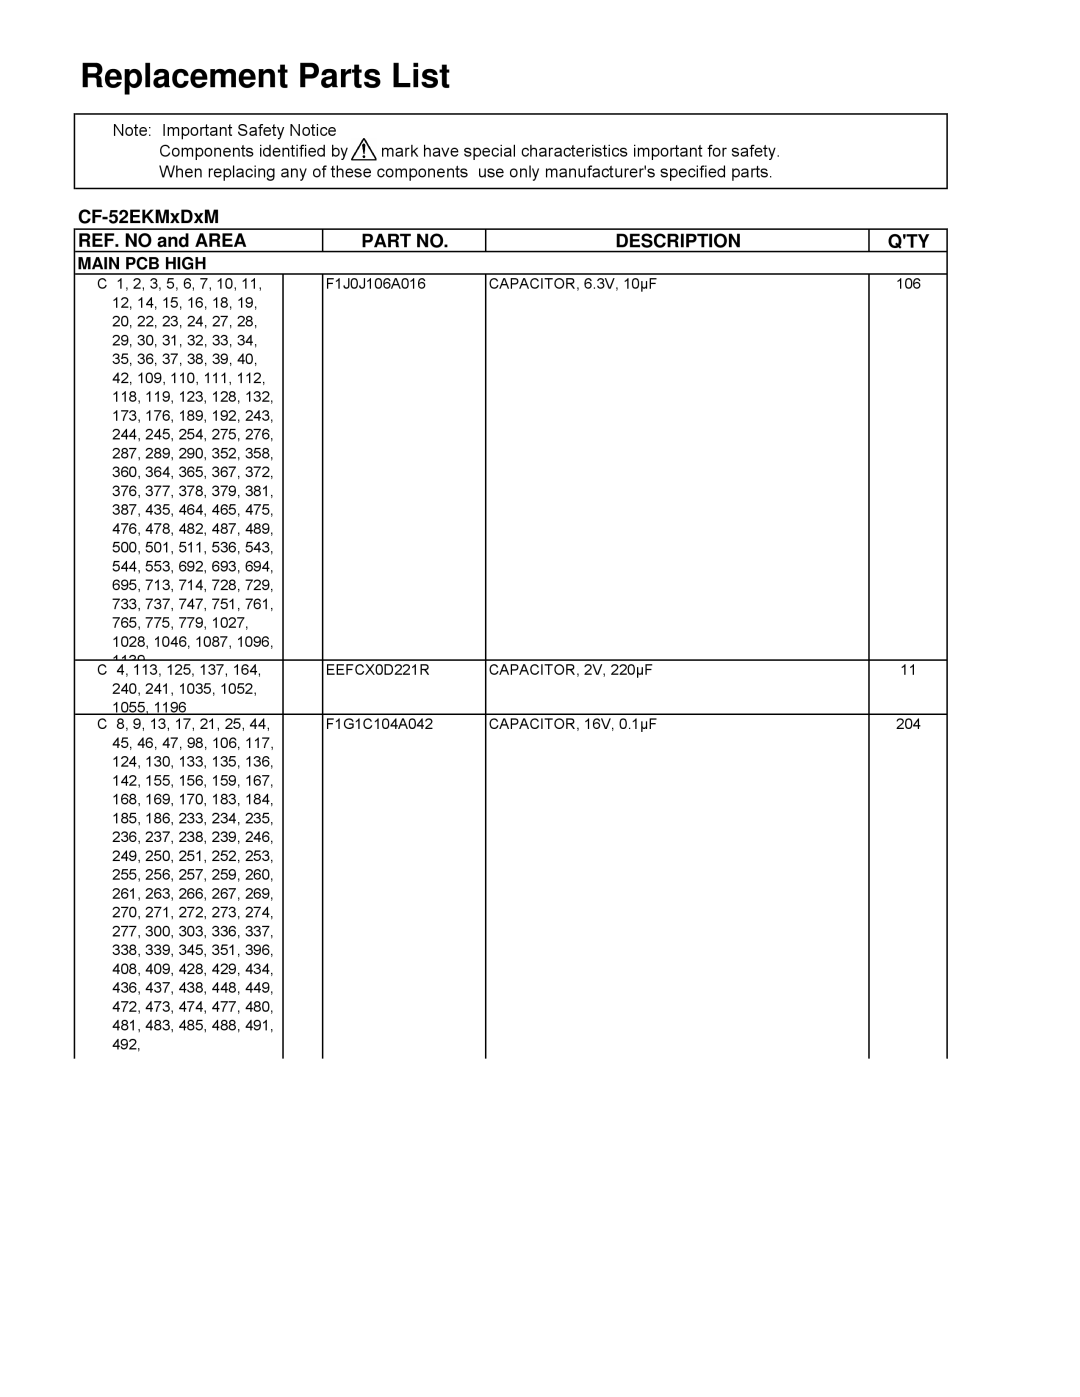 Panasonic CF-52EKM 1 D 2 M Replacement Parts List, CF-52EKMxDxM, REF. NO and AREA, Description, Main Pcb High 